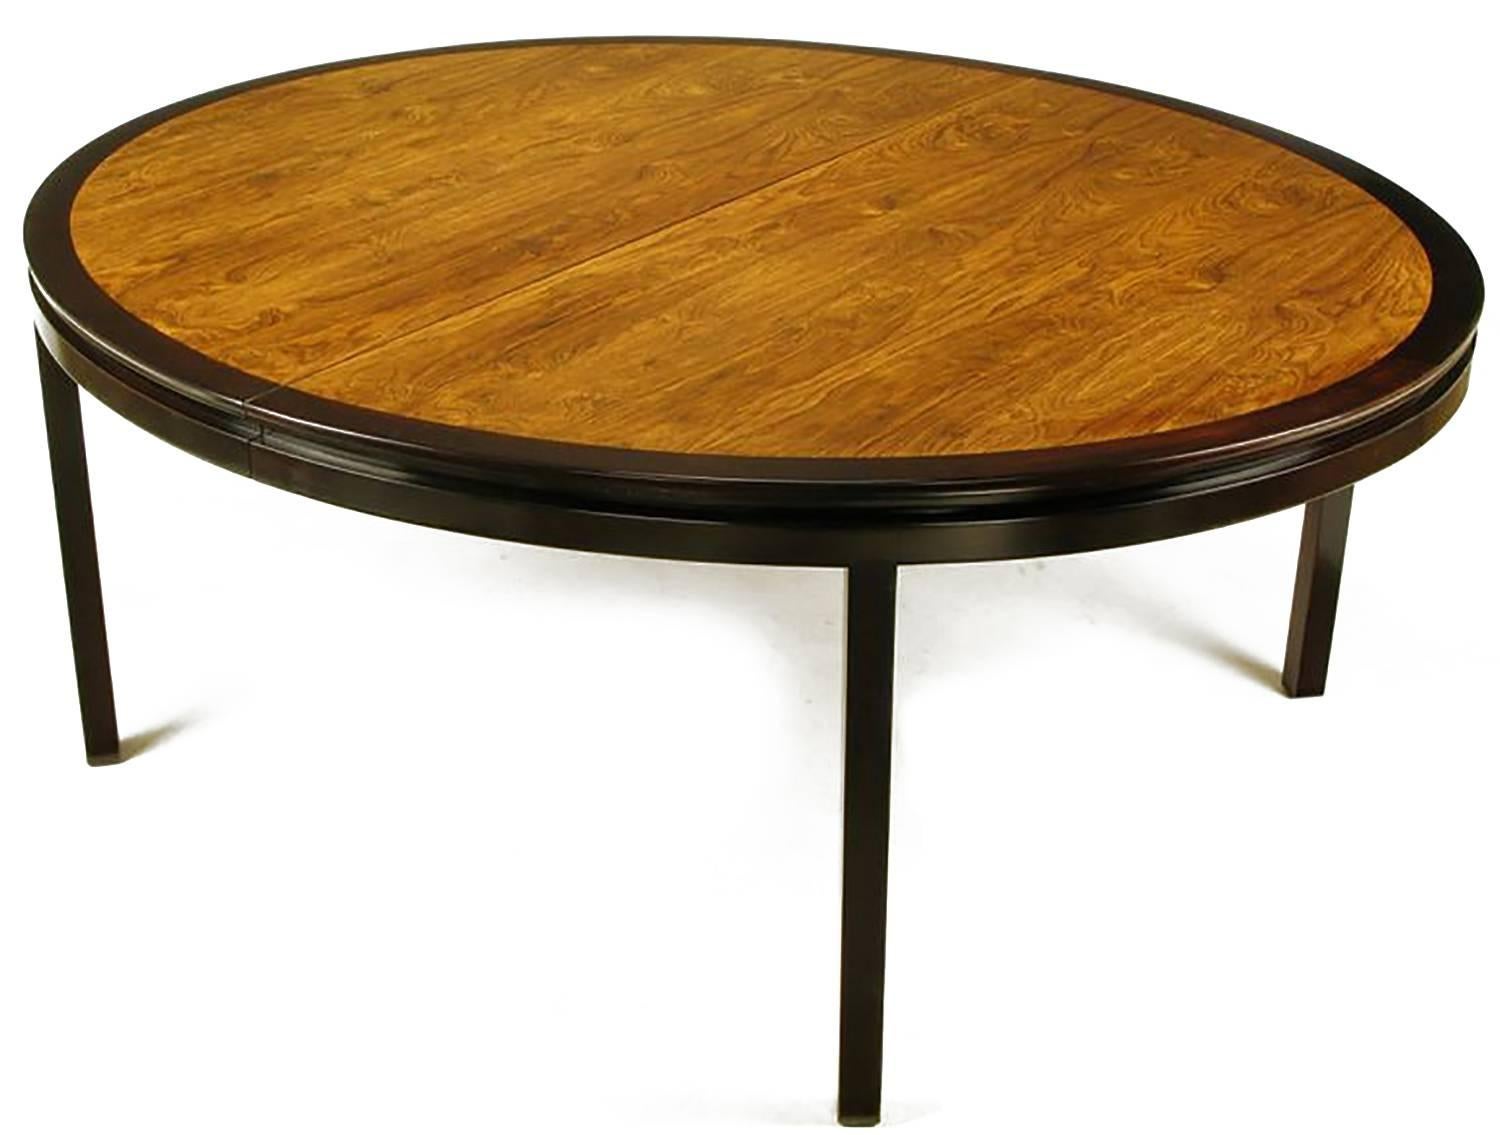 Remarquable grande table à manger ovale faite sur mesure et conçue par Edward Wormley pour Dunbar. Bordure en acajou teinté foncé, tablier incisé et pieds carrés. Le plateau en placage de bois de rose incrusté et assorti est magnifiquement grainé.